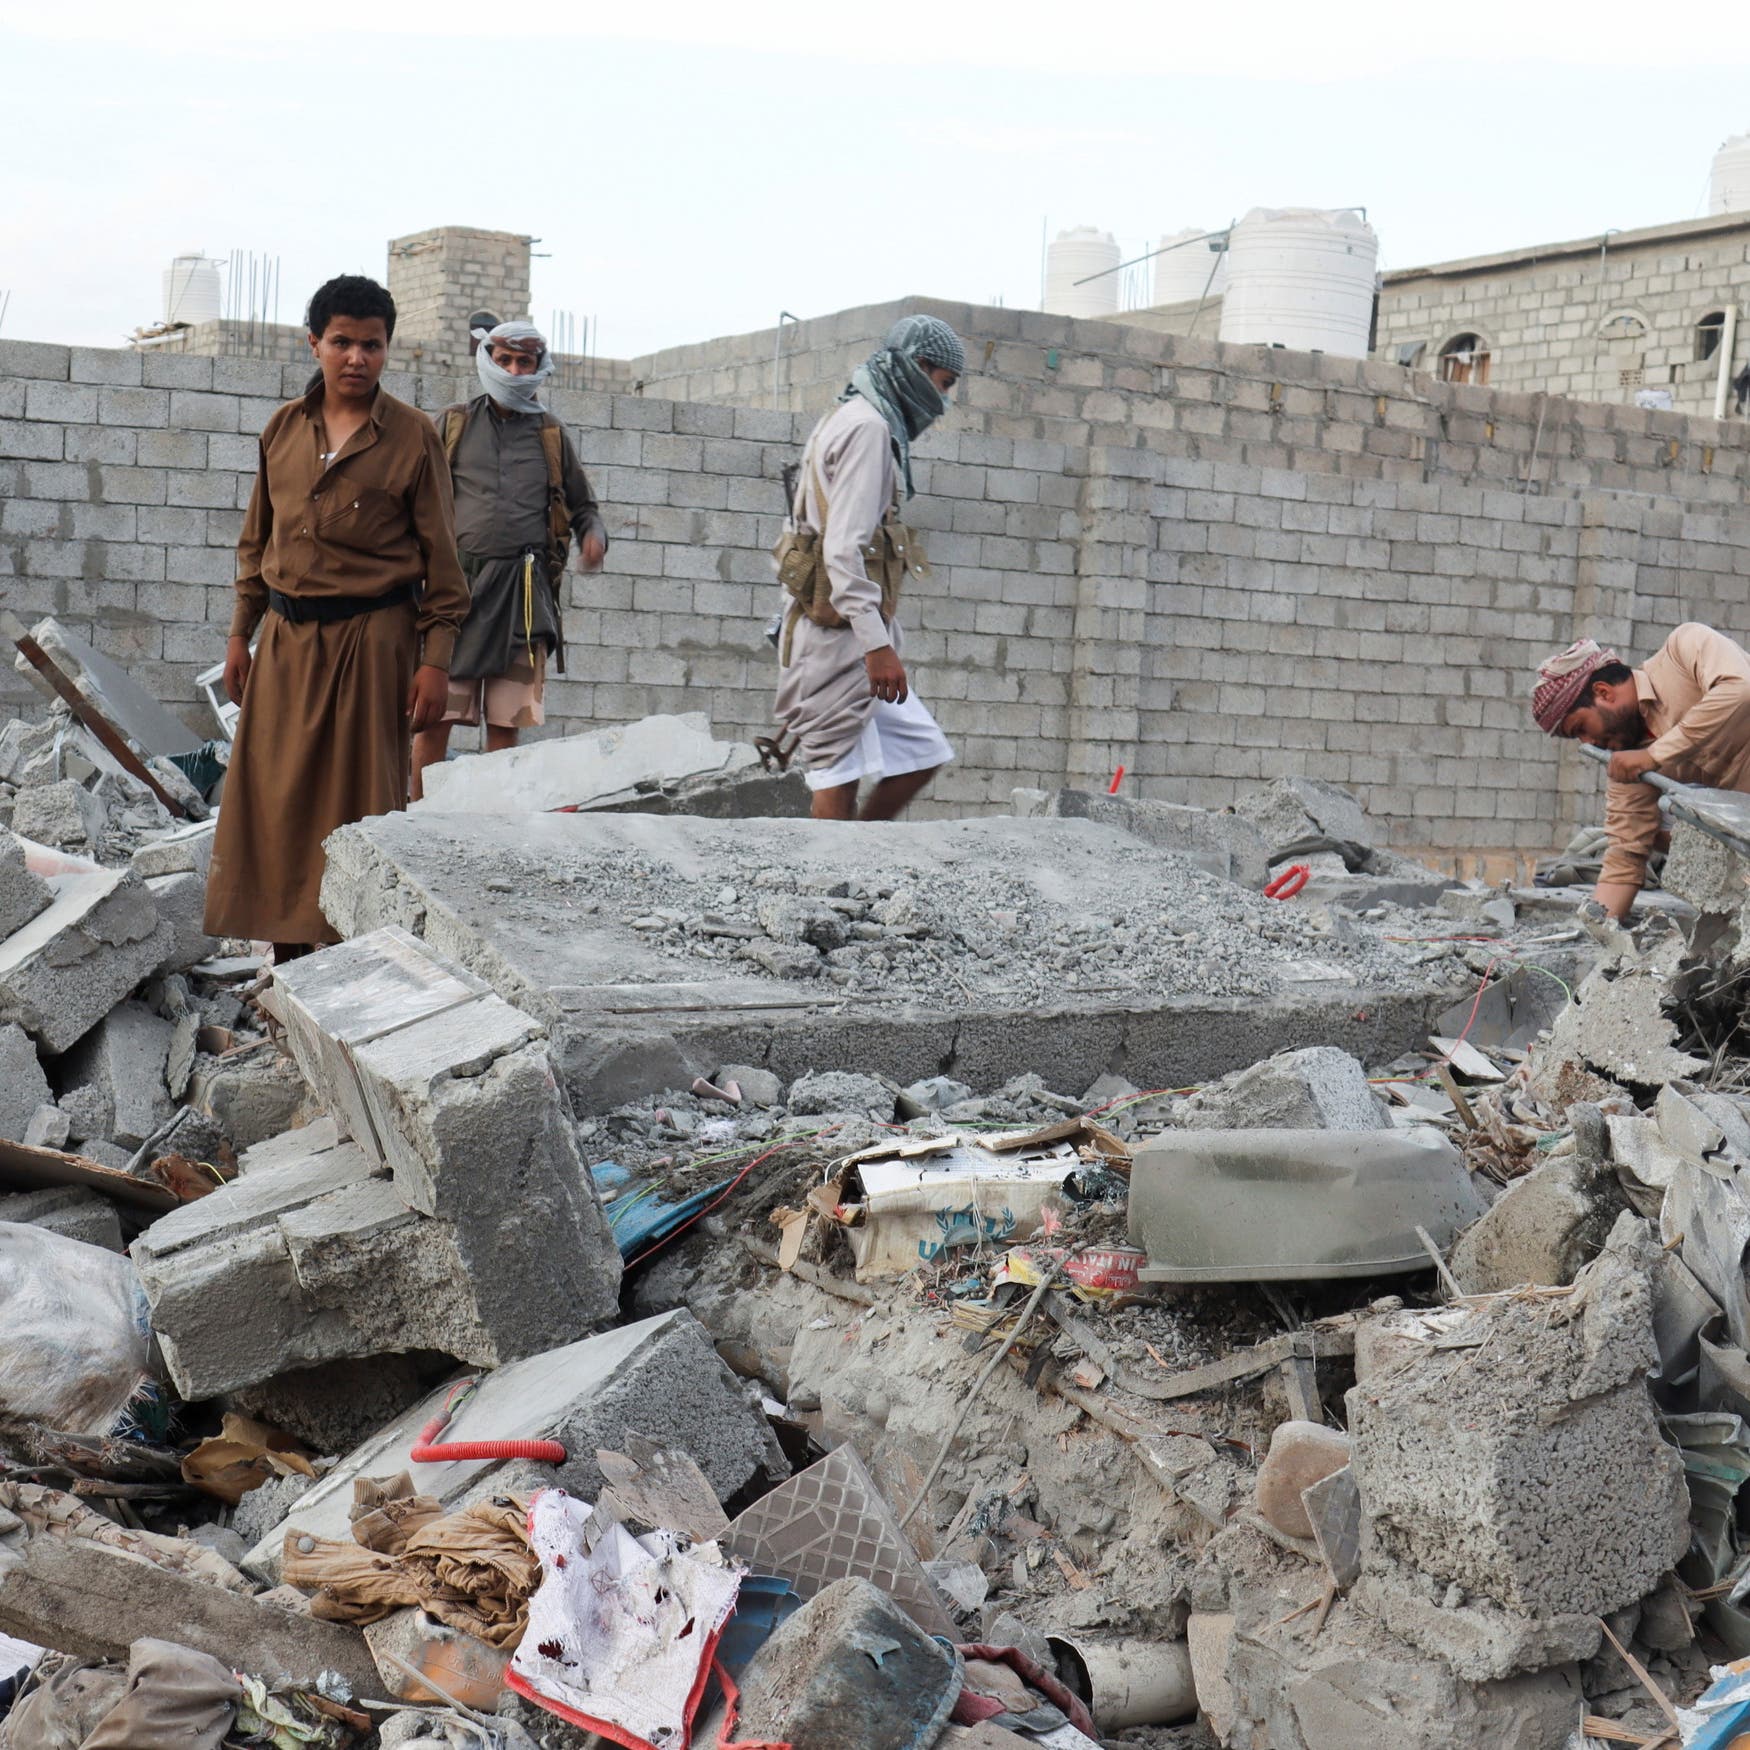 حكومة اليمن تدعو لملاحقة الحوثيين كـ"مجرمي حرب"